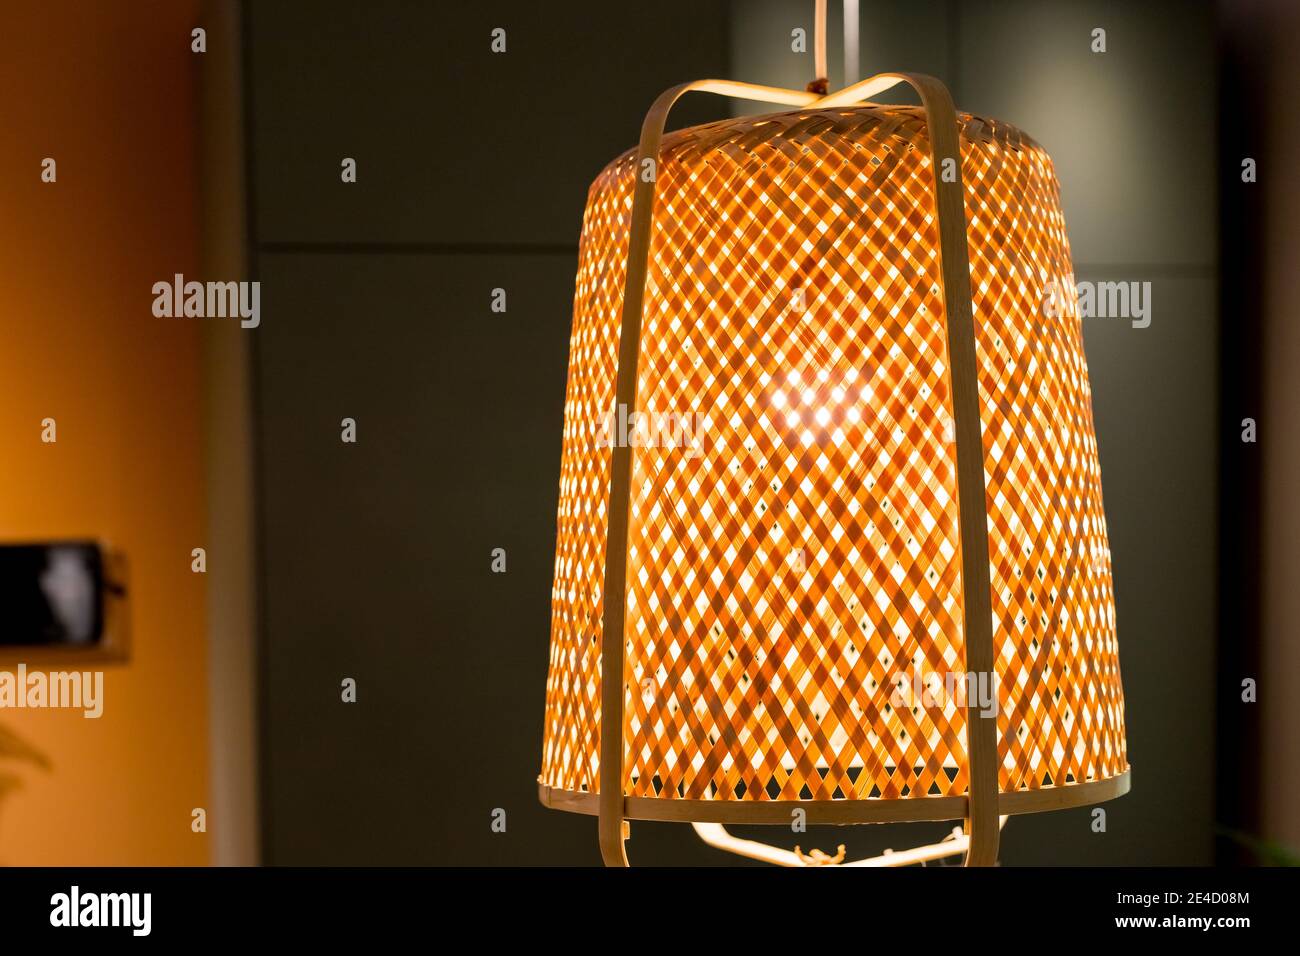 Decorando lámparas colgantes de en mimbre de madera hecho de bambú.Beige boho interior de la sala de estar, accesorios elegantes, caseta de ratán colgante en Fotografía de Alamy